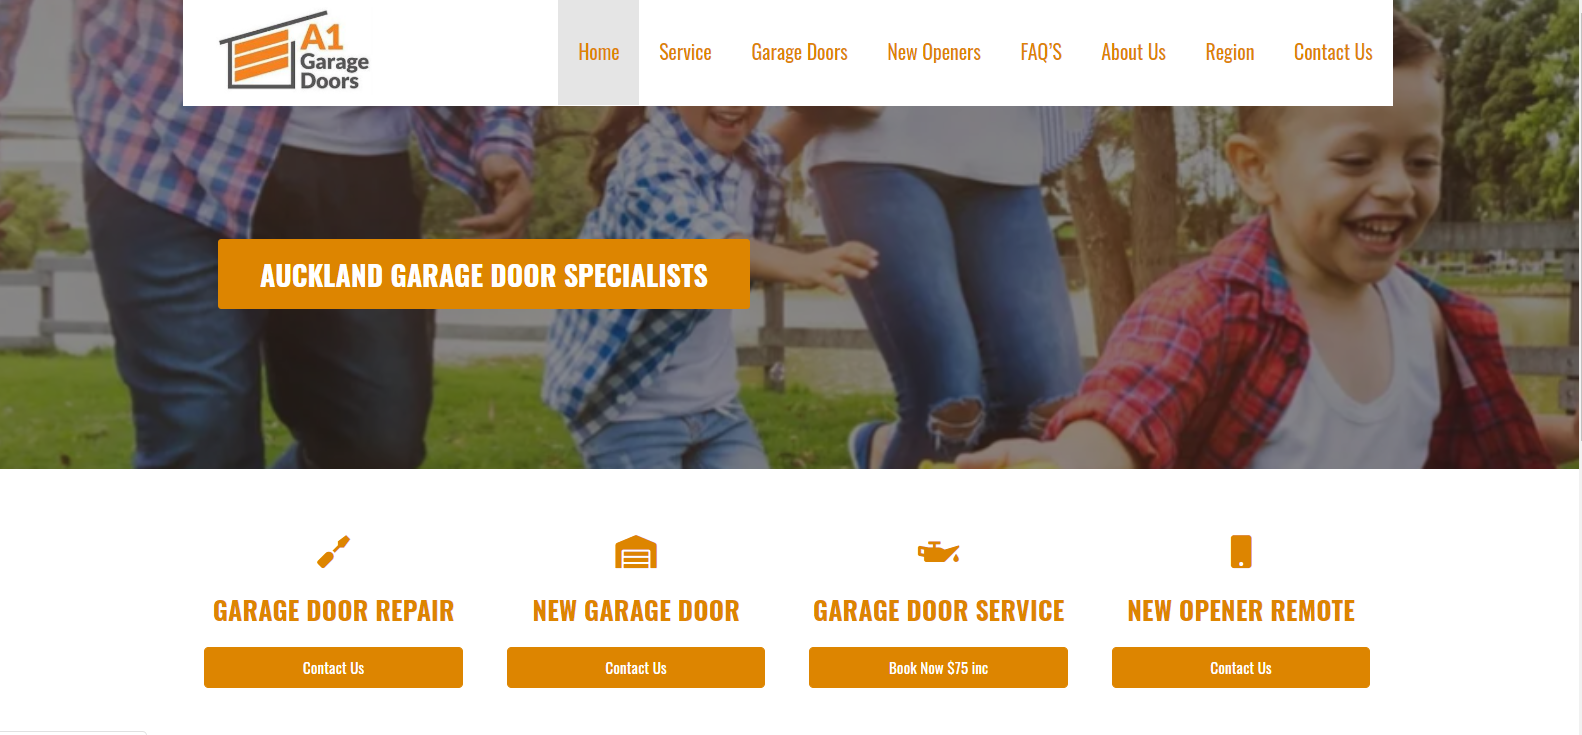 a1 garage doors website